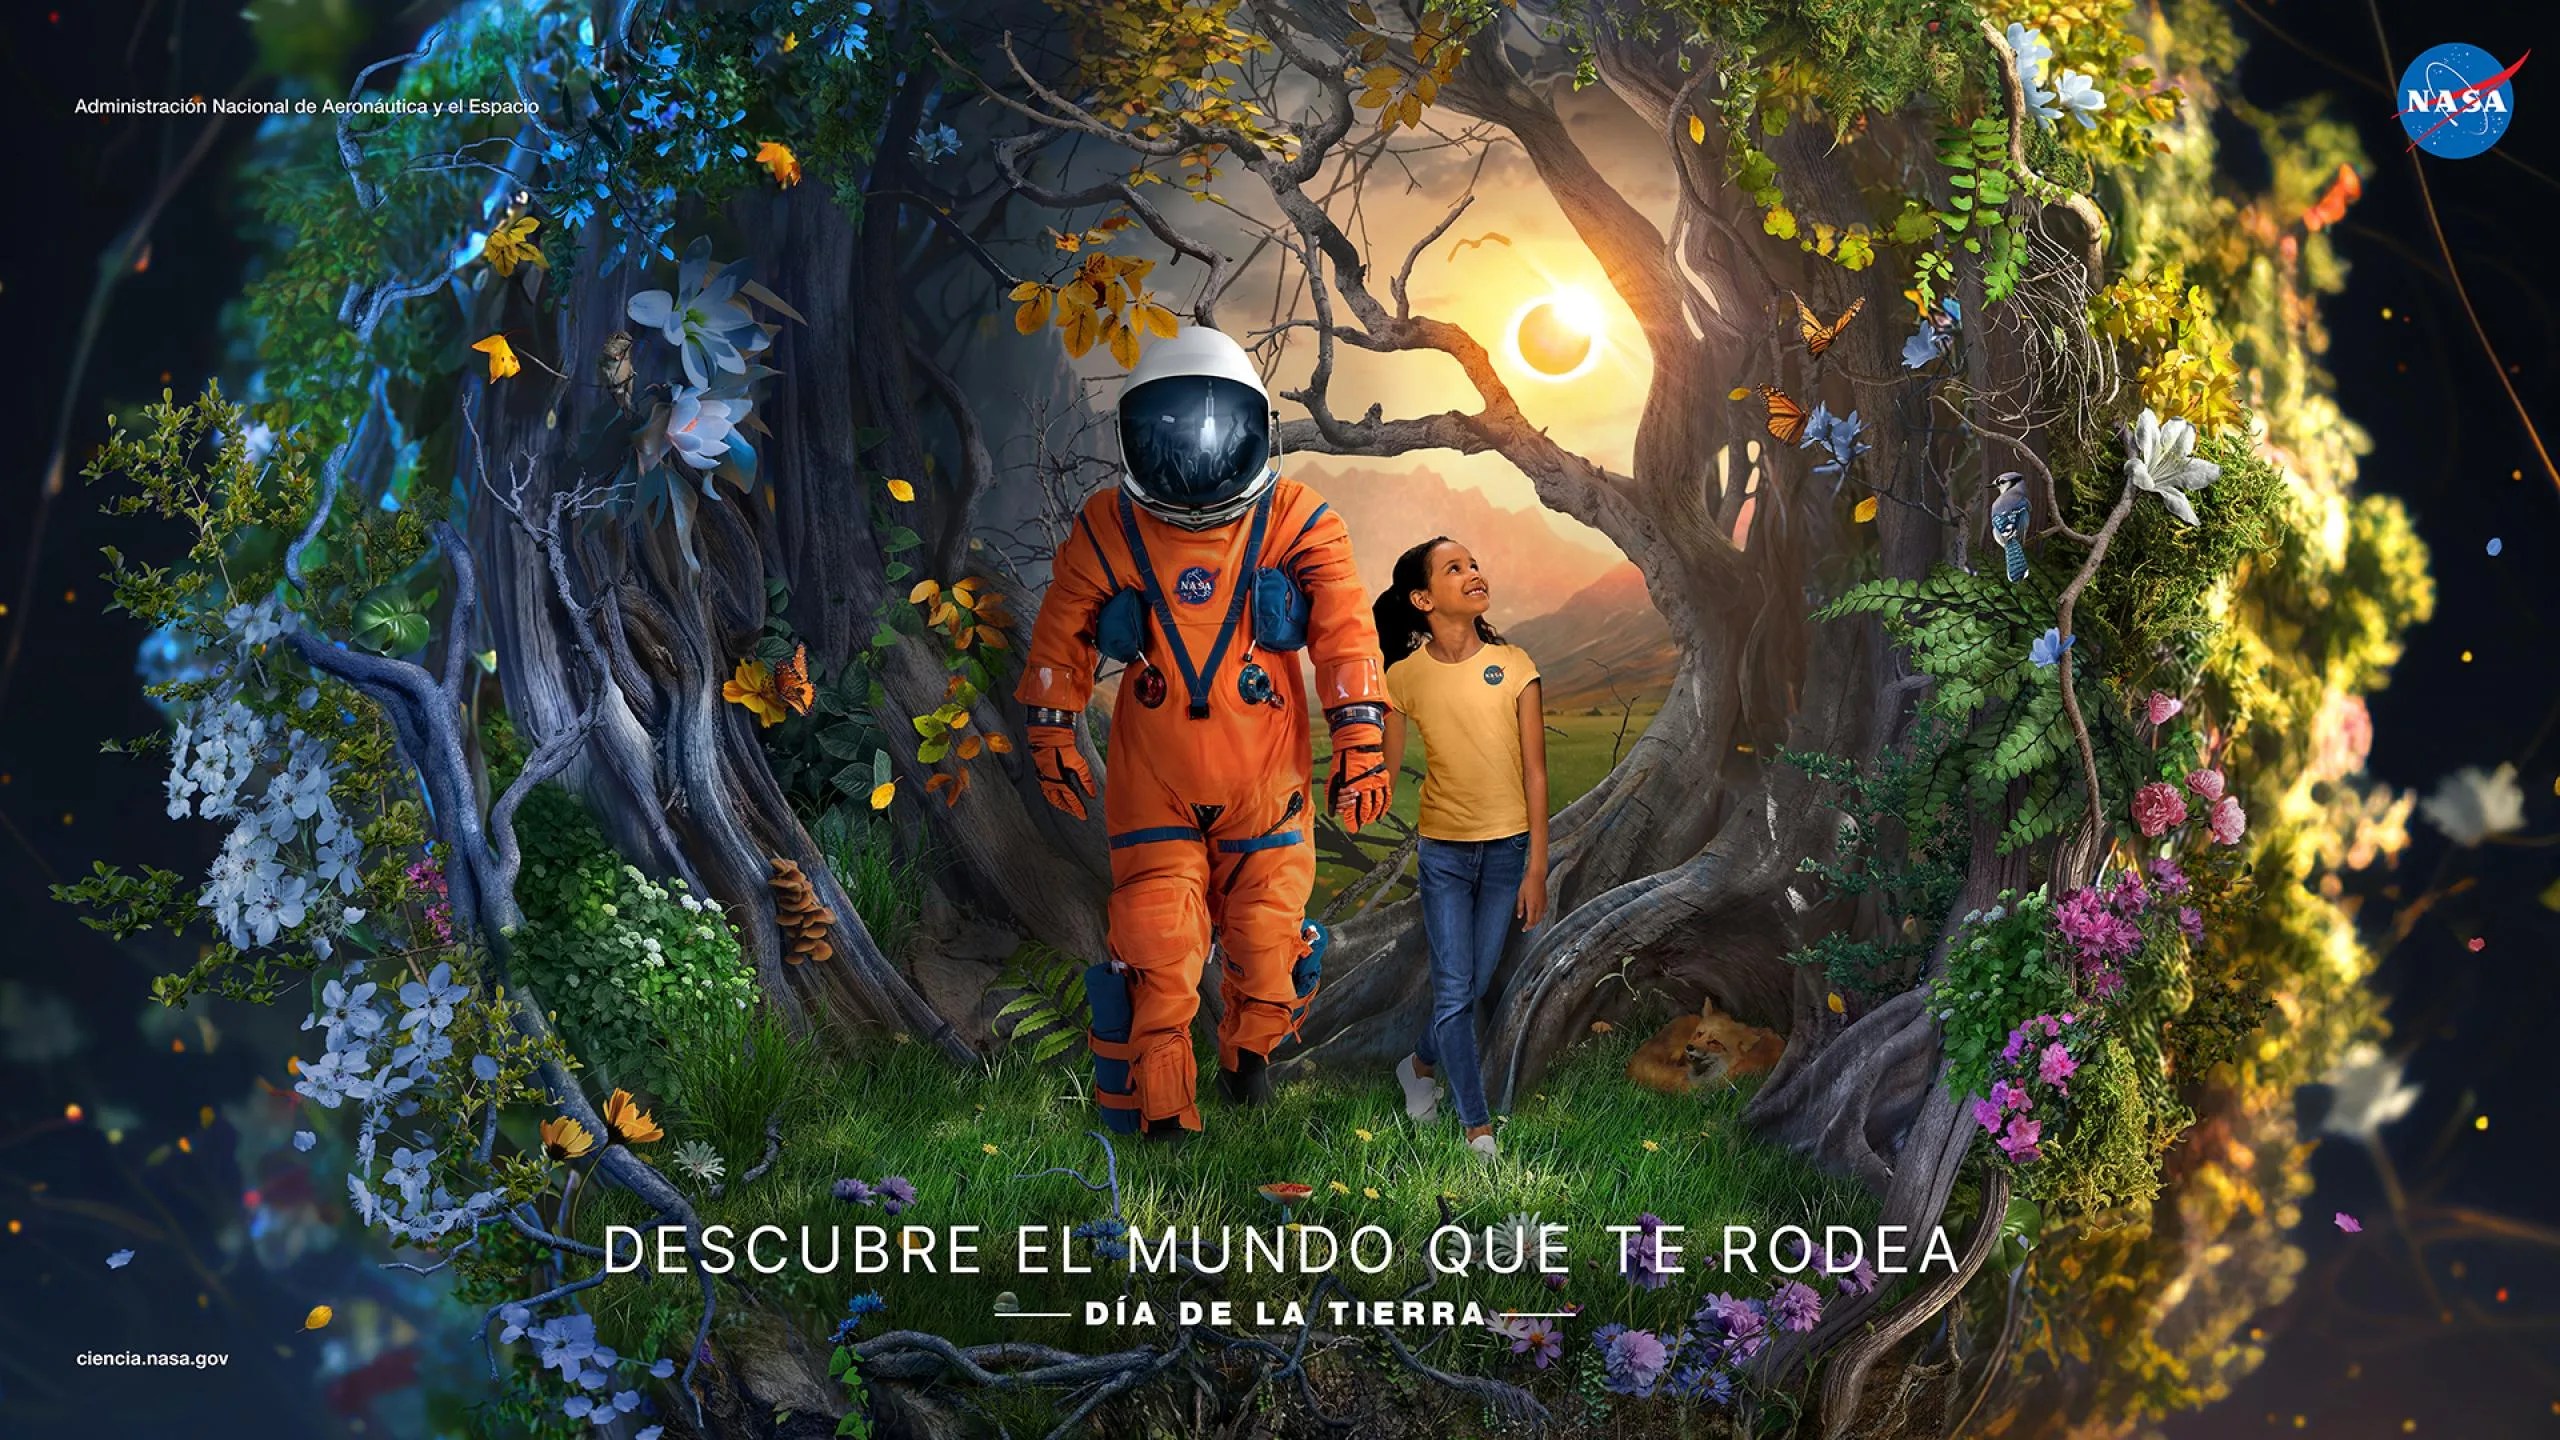 Póster de la NASA para conmemorar el Día de la Tierra de 2023. La imagen muestra en el centro a una niña tomada de la mano de un o una astronauta con su traje naranja. Les rodea un bosque con flores y algunas de sus criaturas (mariposas, un zorro, aves). Detrás se ve el Sol iluminando el camino.